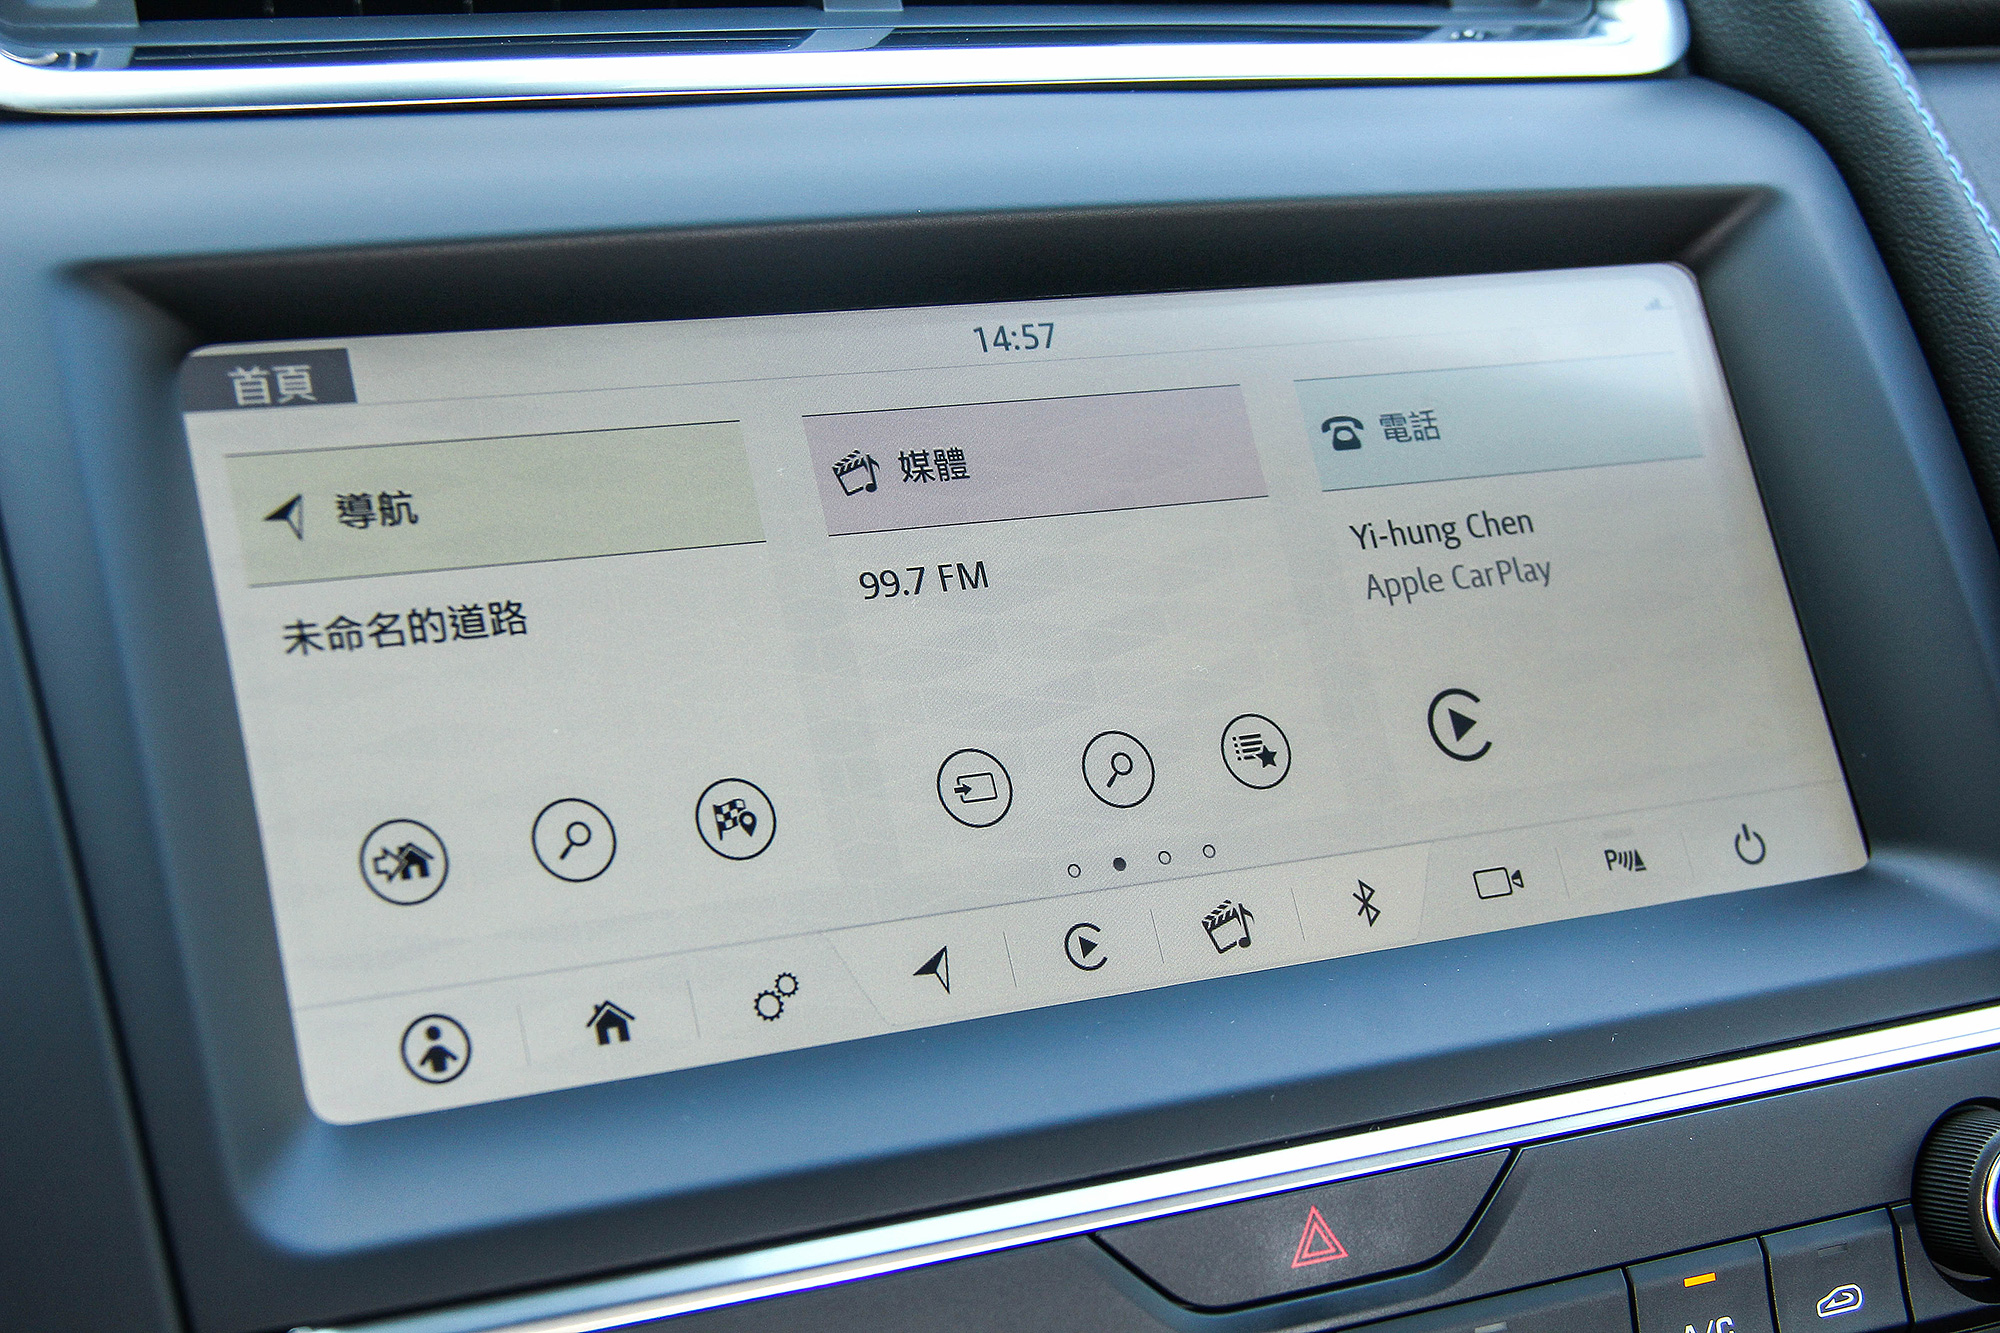 10 吋 TouchPro 智慧多媒體觸控式顯示幕科技感十足。